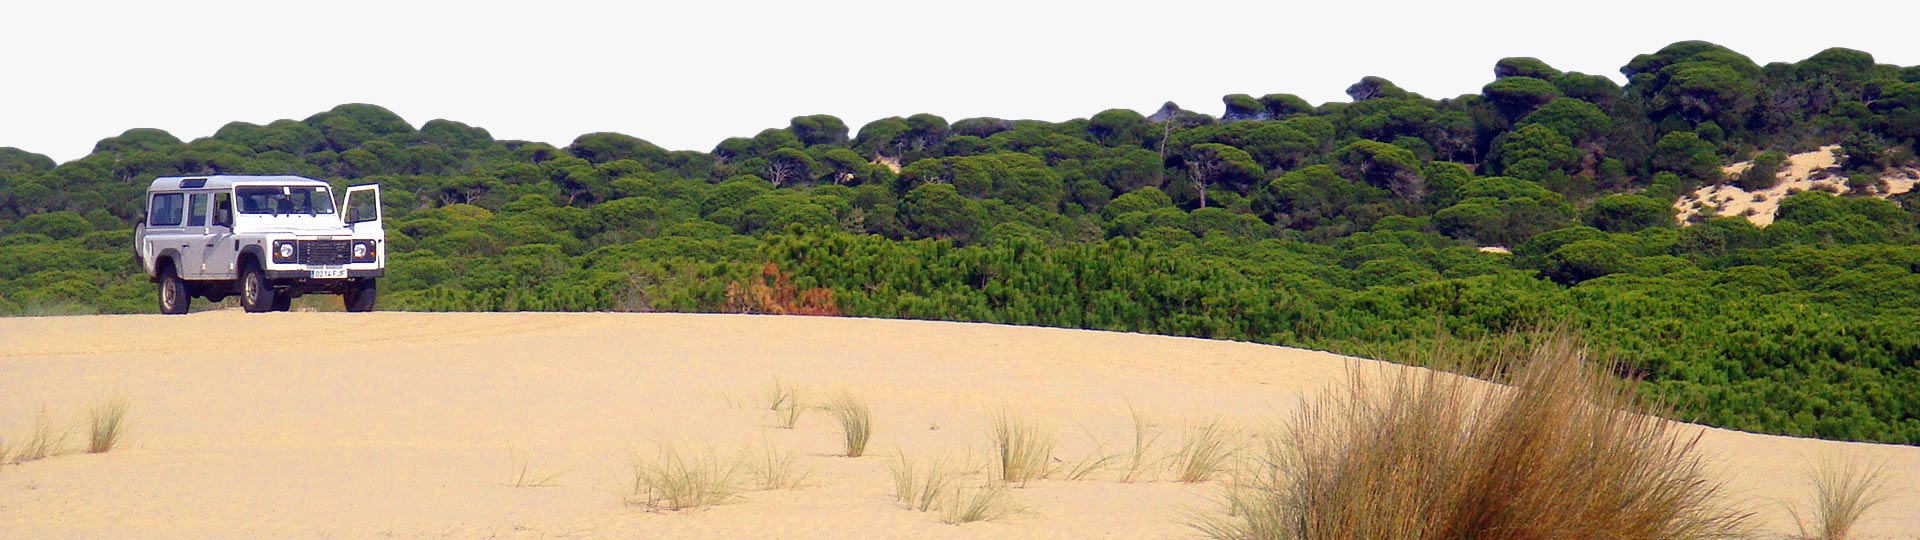 Todoterreno en el Parque Nacional de Doñana, en Huelva (Andalucía)